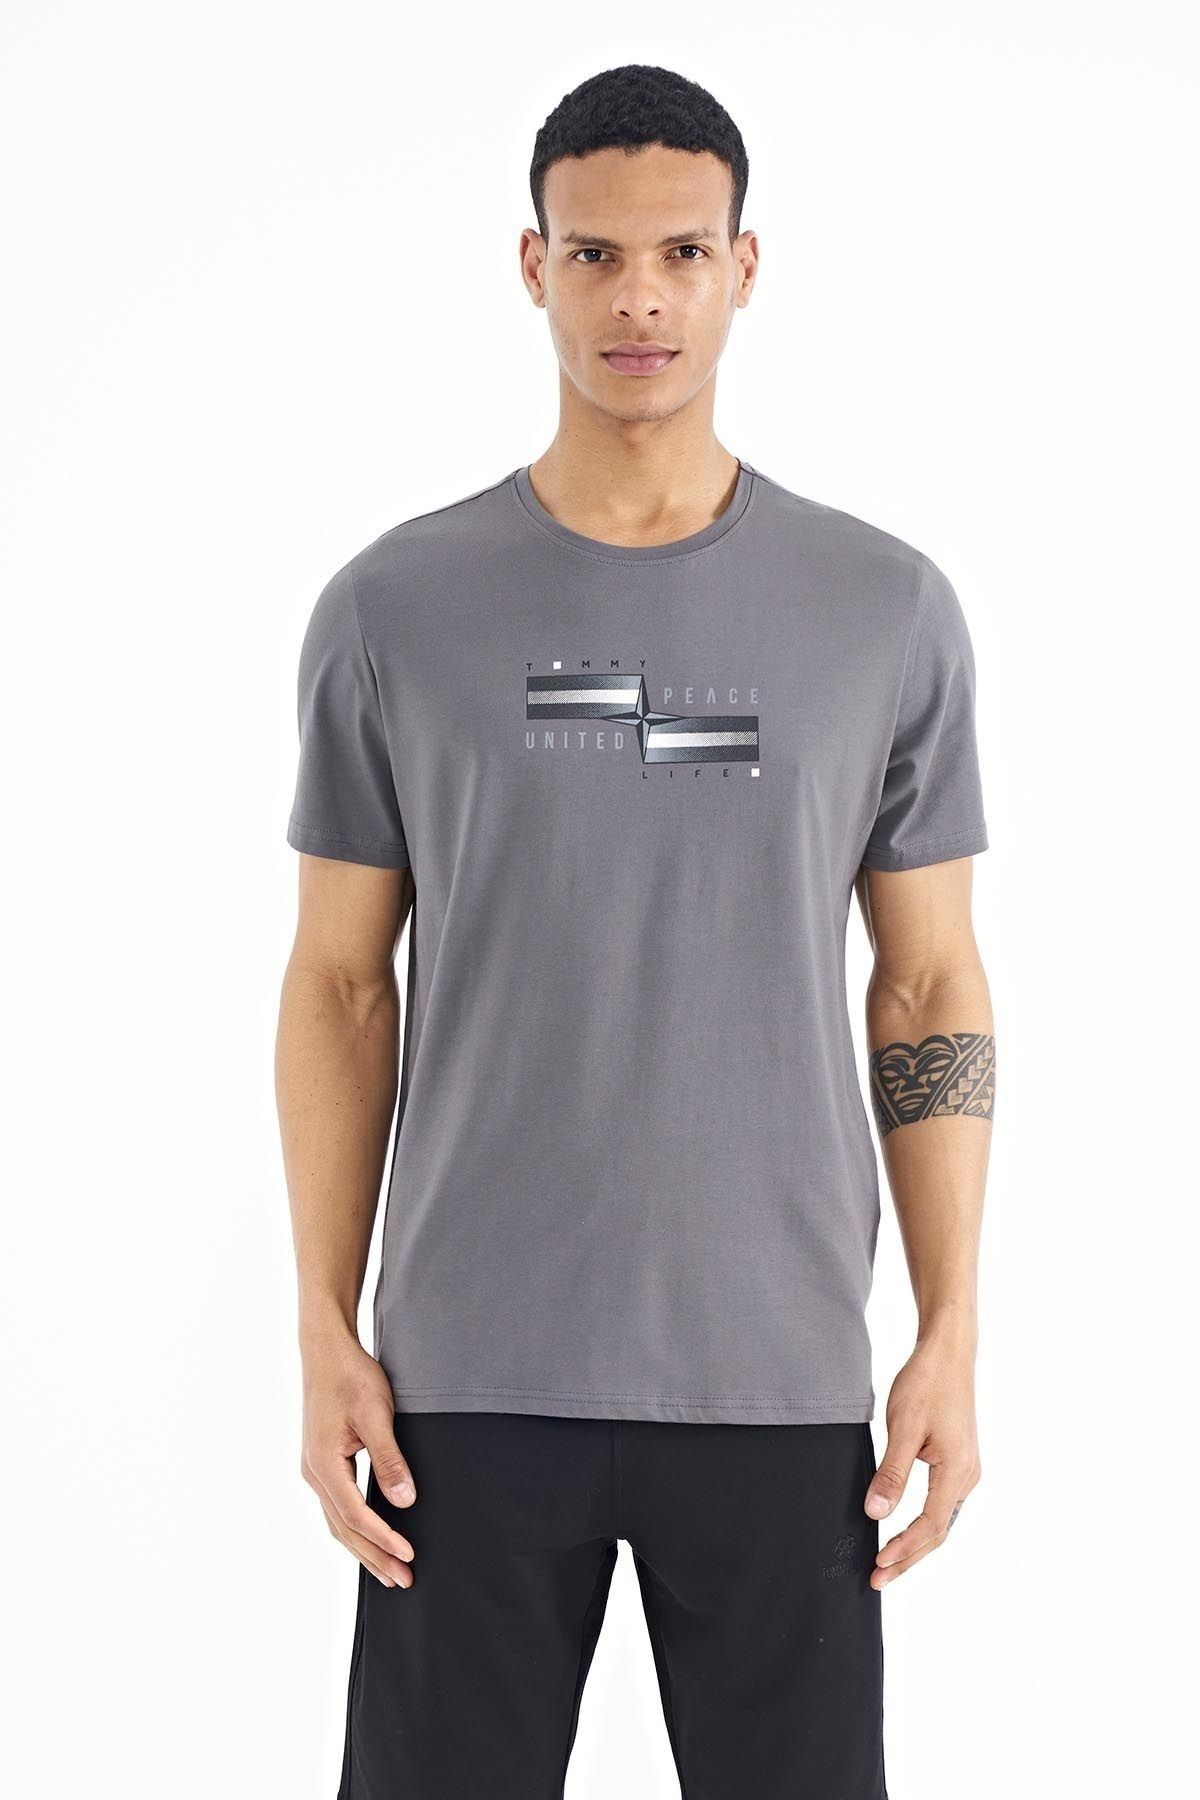 TOMMY LIFE Koyu Gri Yazılı Şekil Basklı Standart Kalıp Erkek T-shirt - 88215